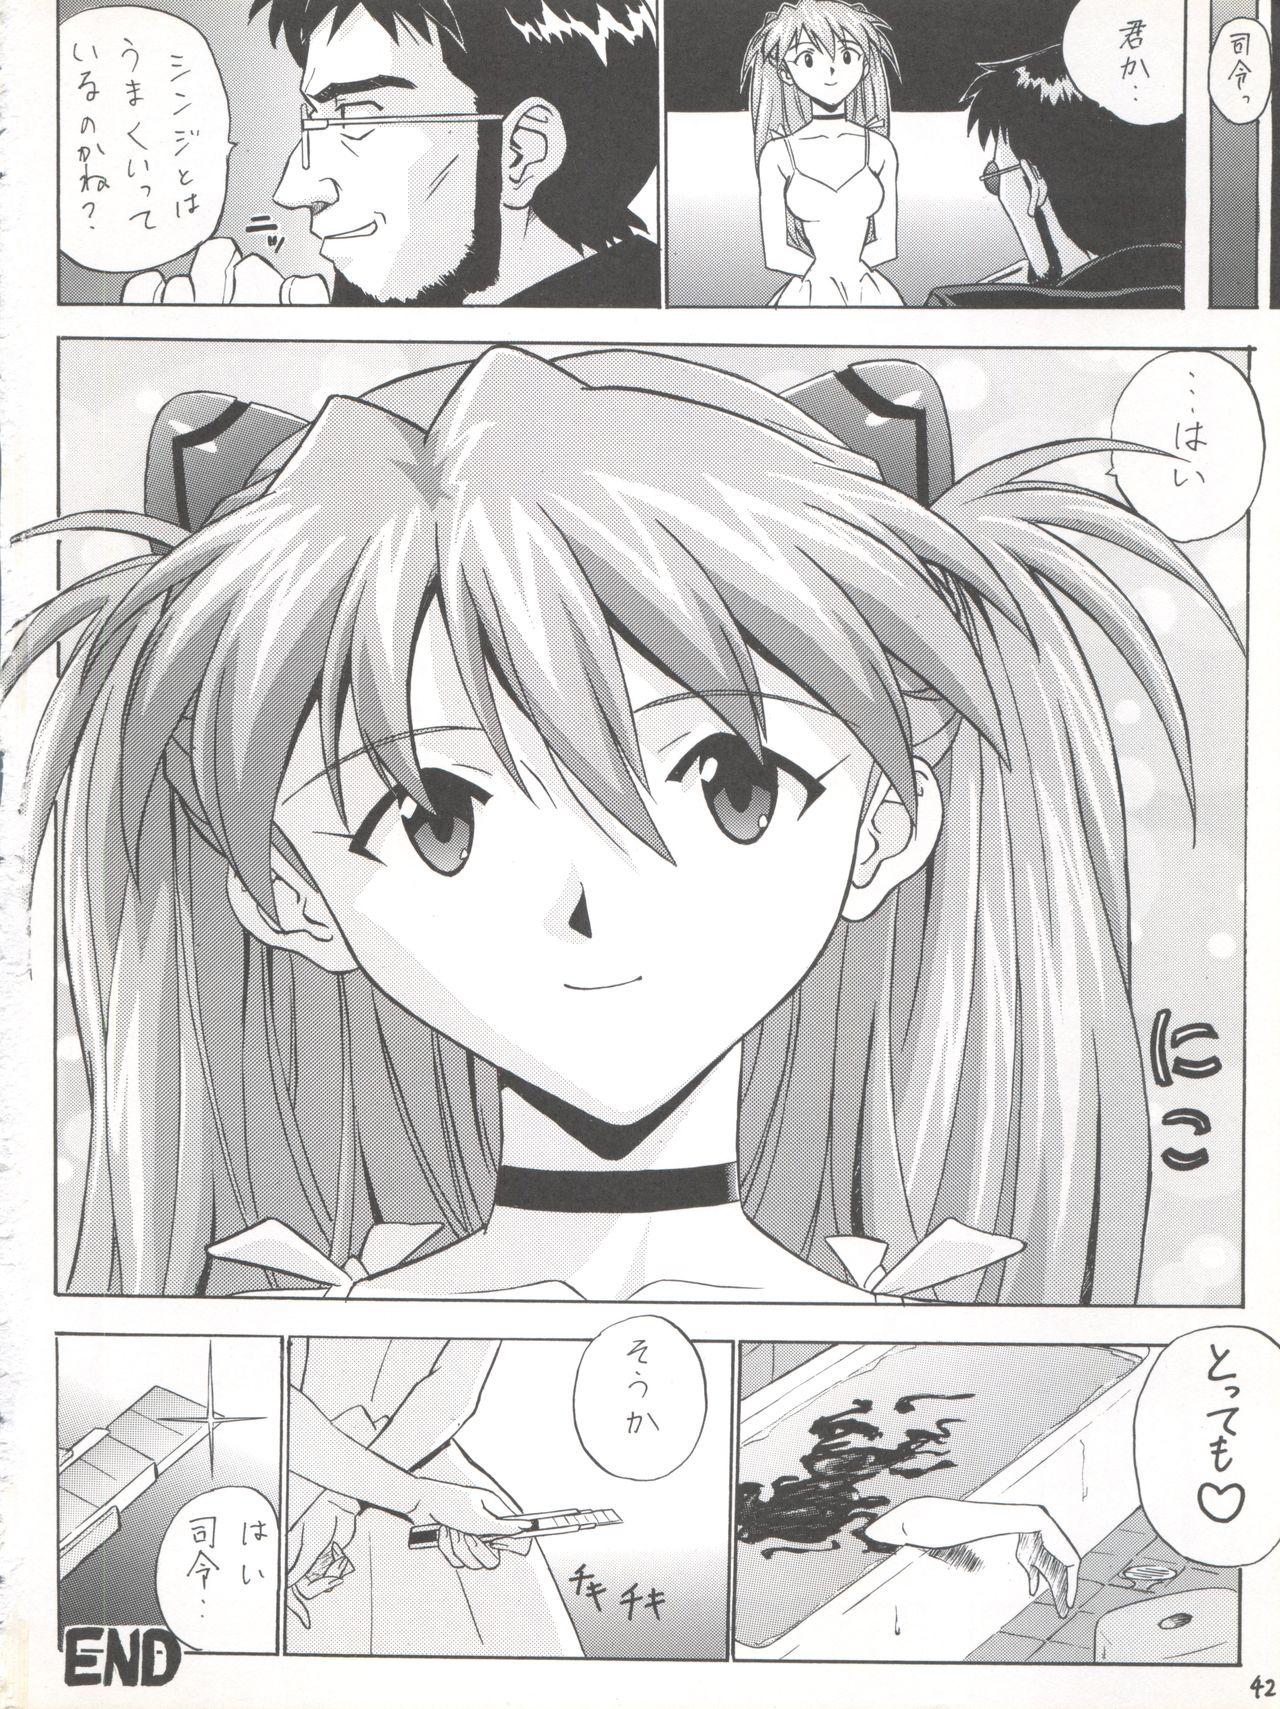 Hooker EN - Neon genesis evangelion Fushigi no umi no nadia Kashima - Page 42